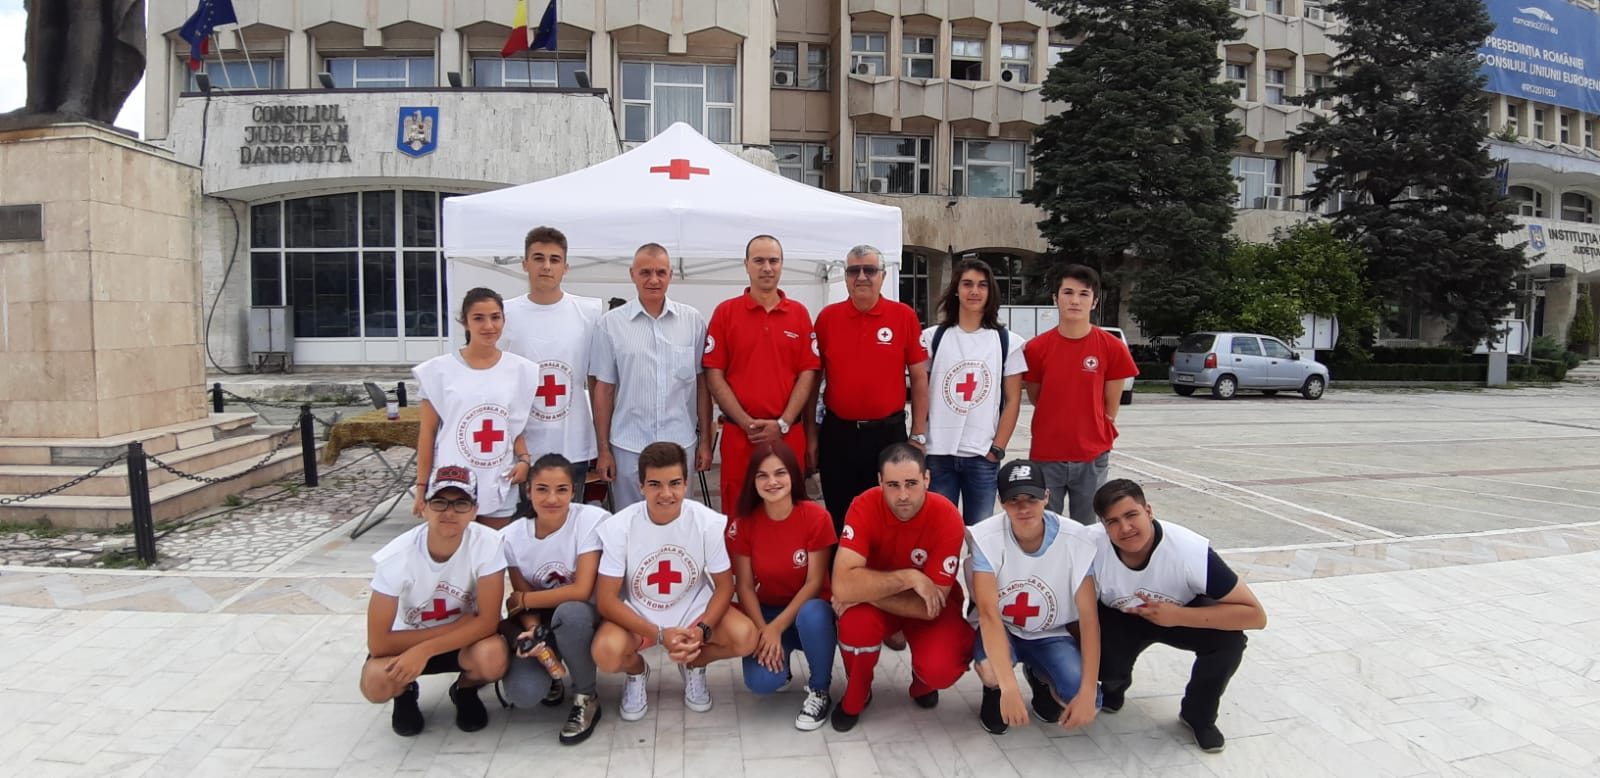 Read more about the article În data de 4 iulie, moment aniversar pentru Crucea Roșie Română, marcând 143 de ani de activitate neîntreruptă, voluntarii dâmbovițeni au sărbătorit prin organizarea unei campanii de sănătate în centrul Municipiului Târgoviște de care au beneficiat aproximativ 150 de persoane.